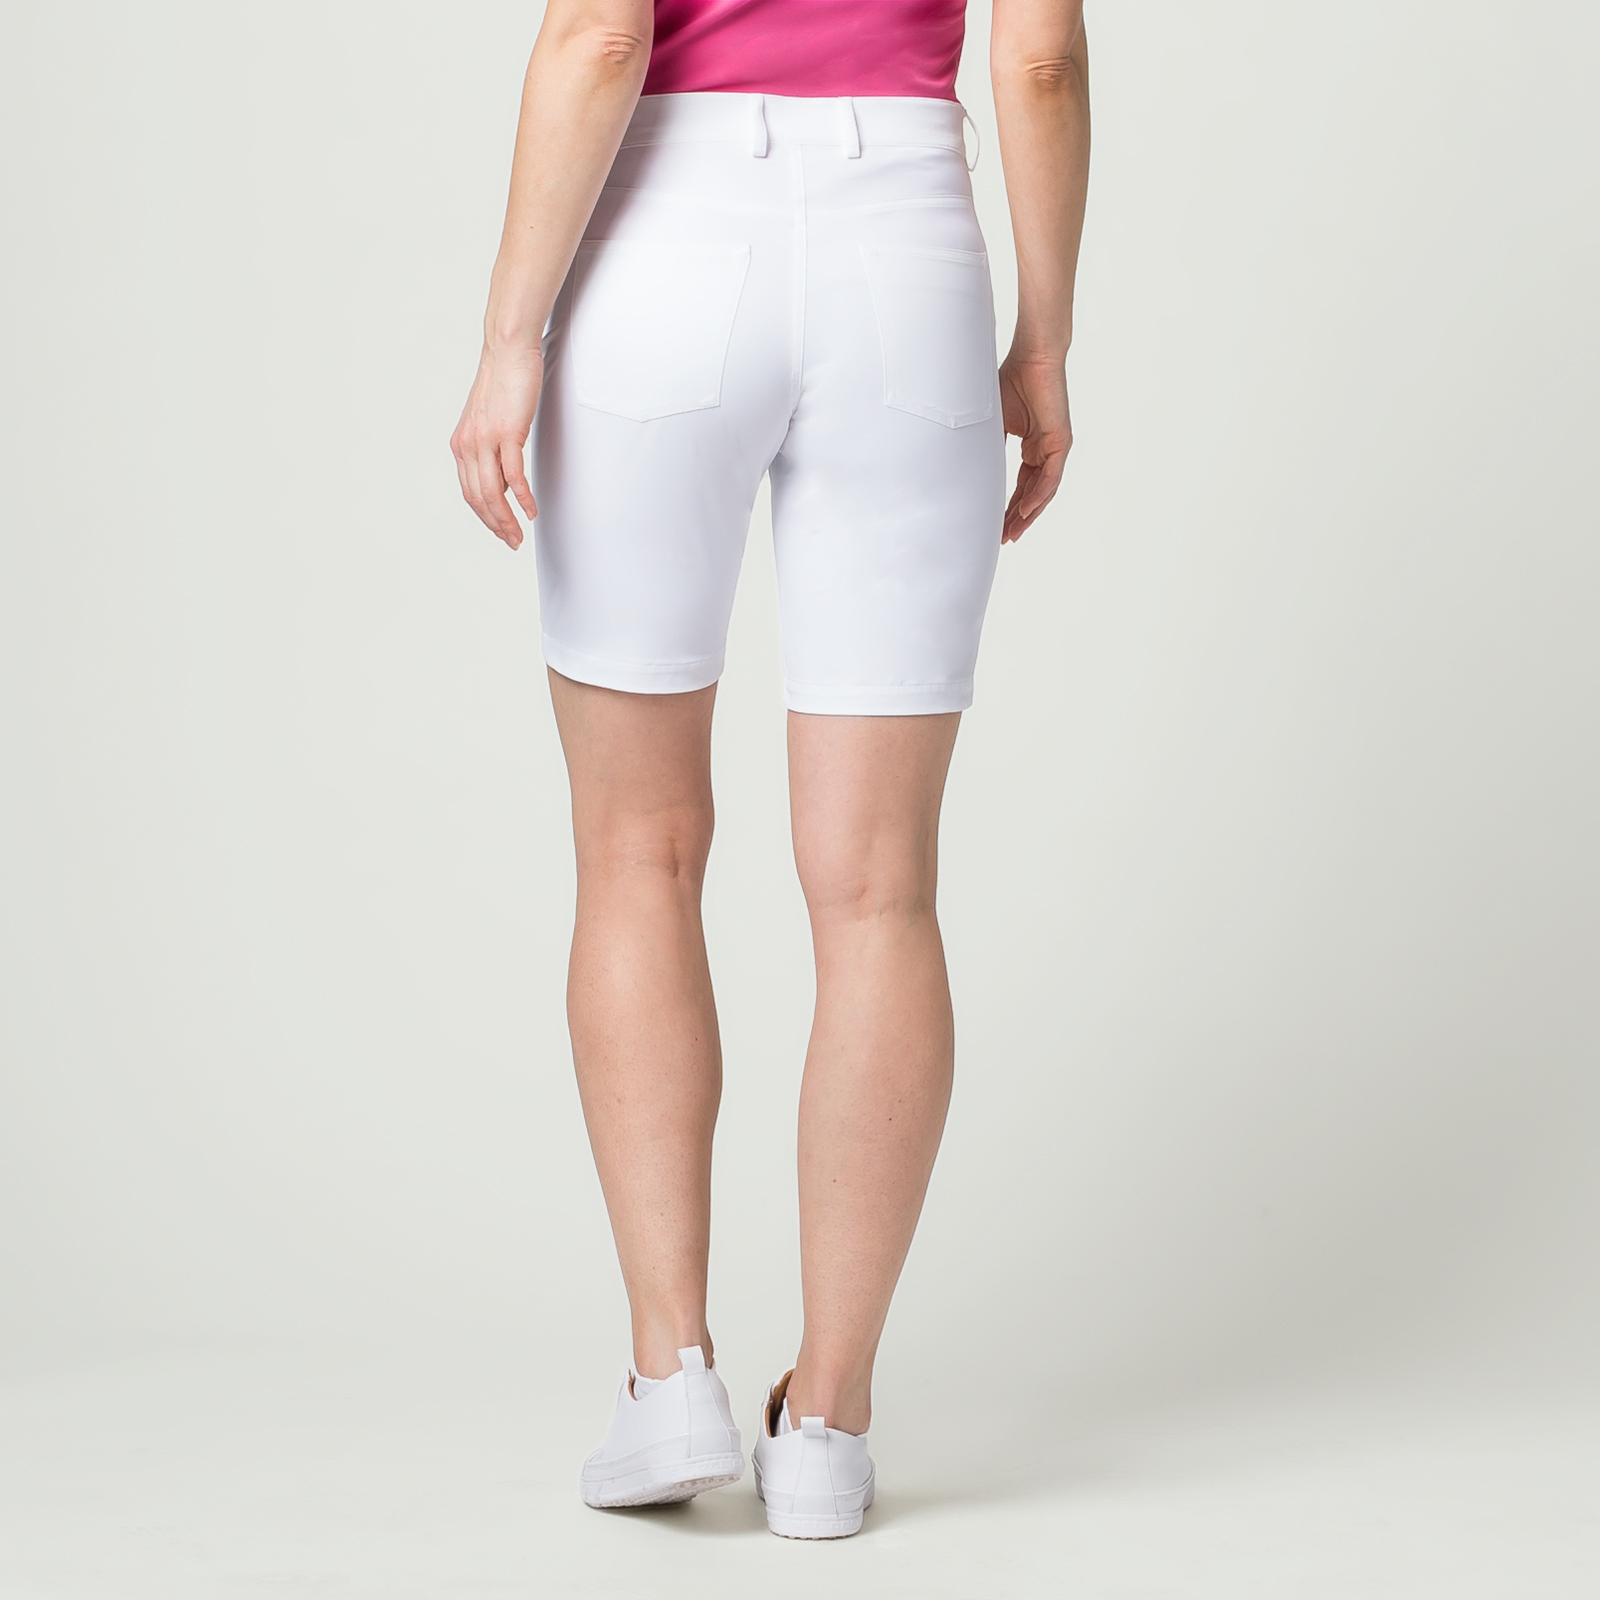 Damen Golf-Bermuda Sonnenschutz mit Extra Stretch Komfort in Slim Fit